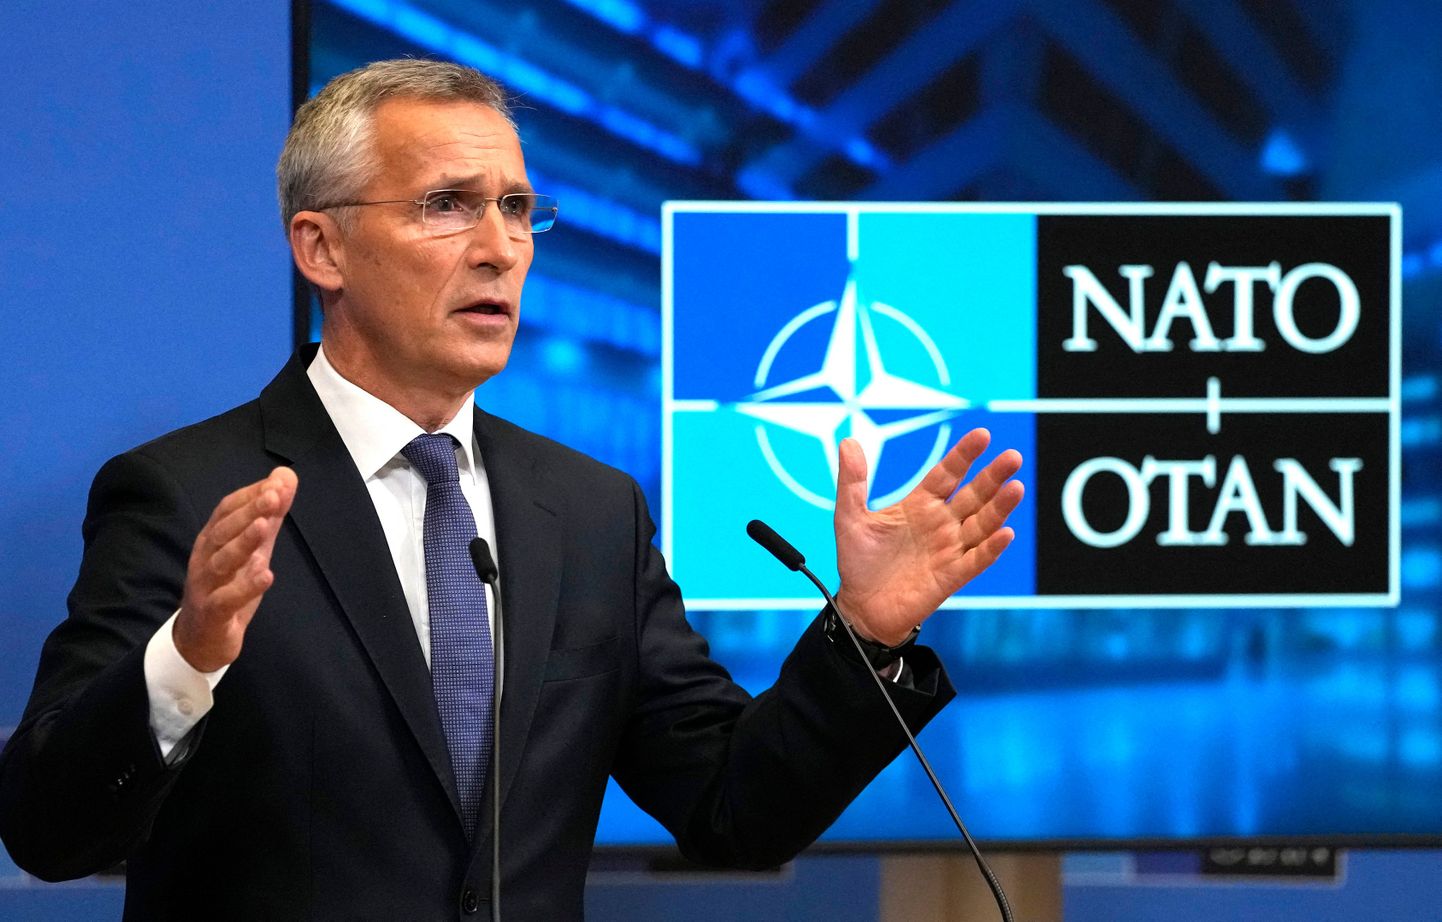 Генеральный секретарь НАТО Йенс Столтенберг.